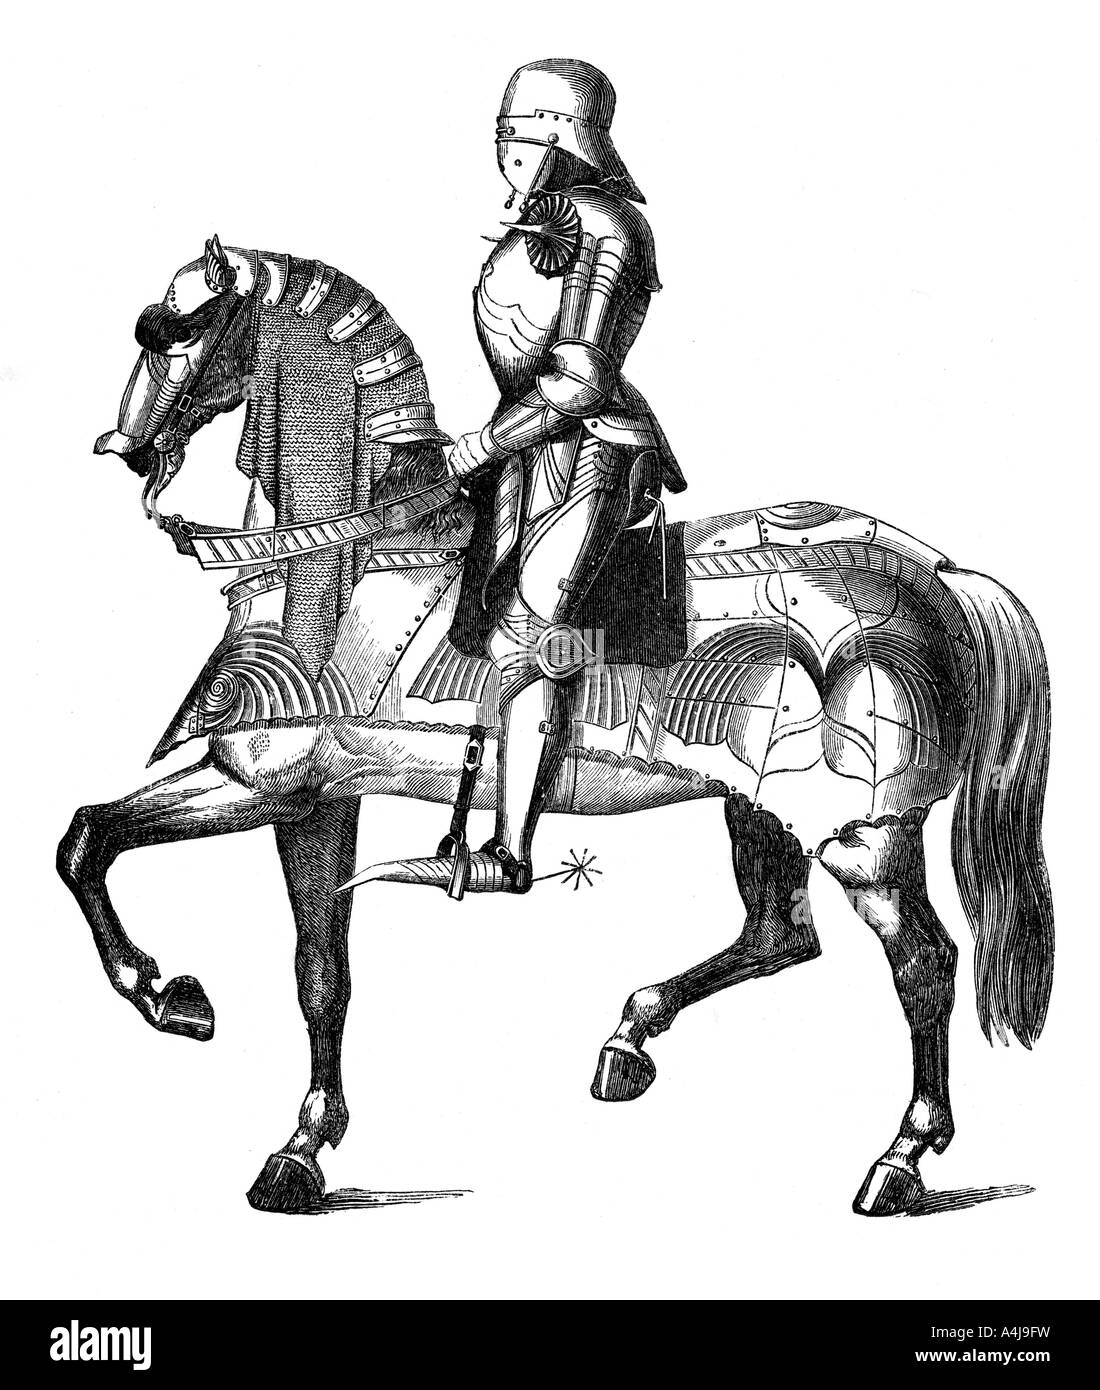 Un chevalier médiéval et armés pour la guerre, à cheval (1870). Artiste : Inconnu Banque D'Images